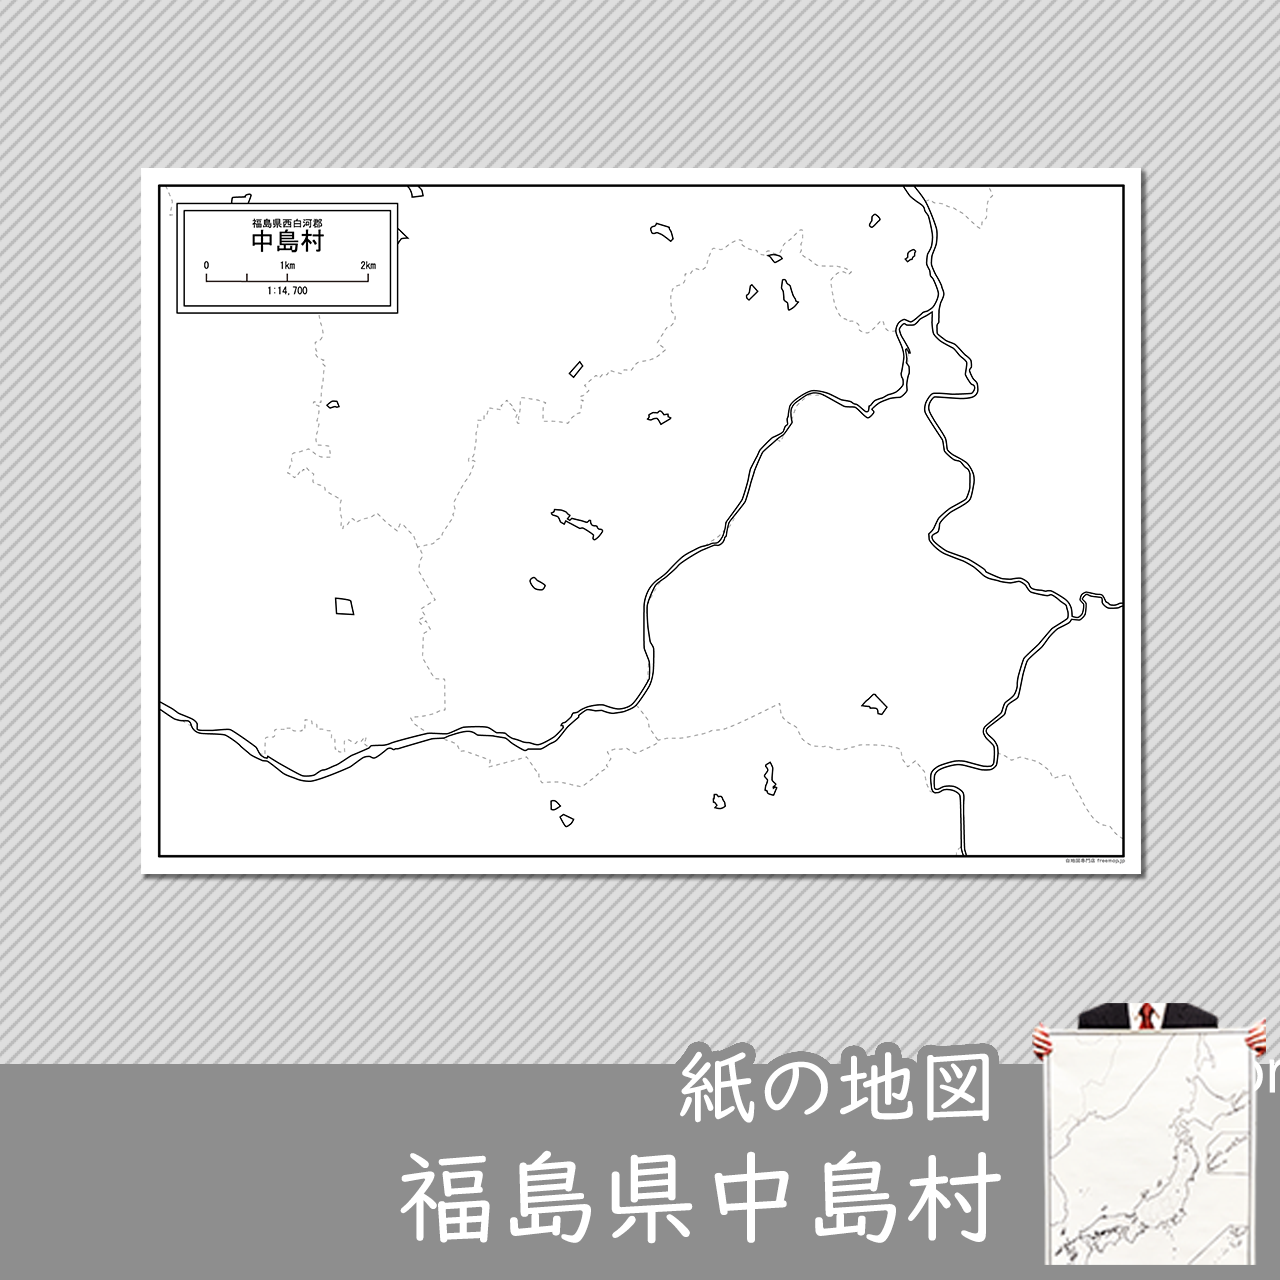 中島村の紙の白地図のサムネイル